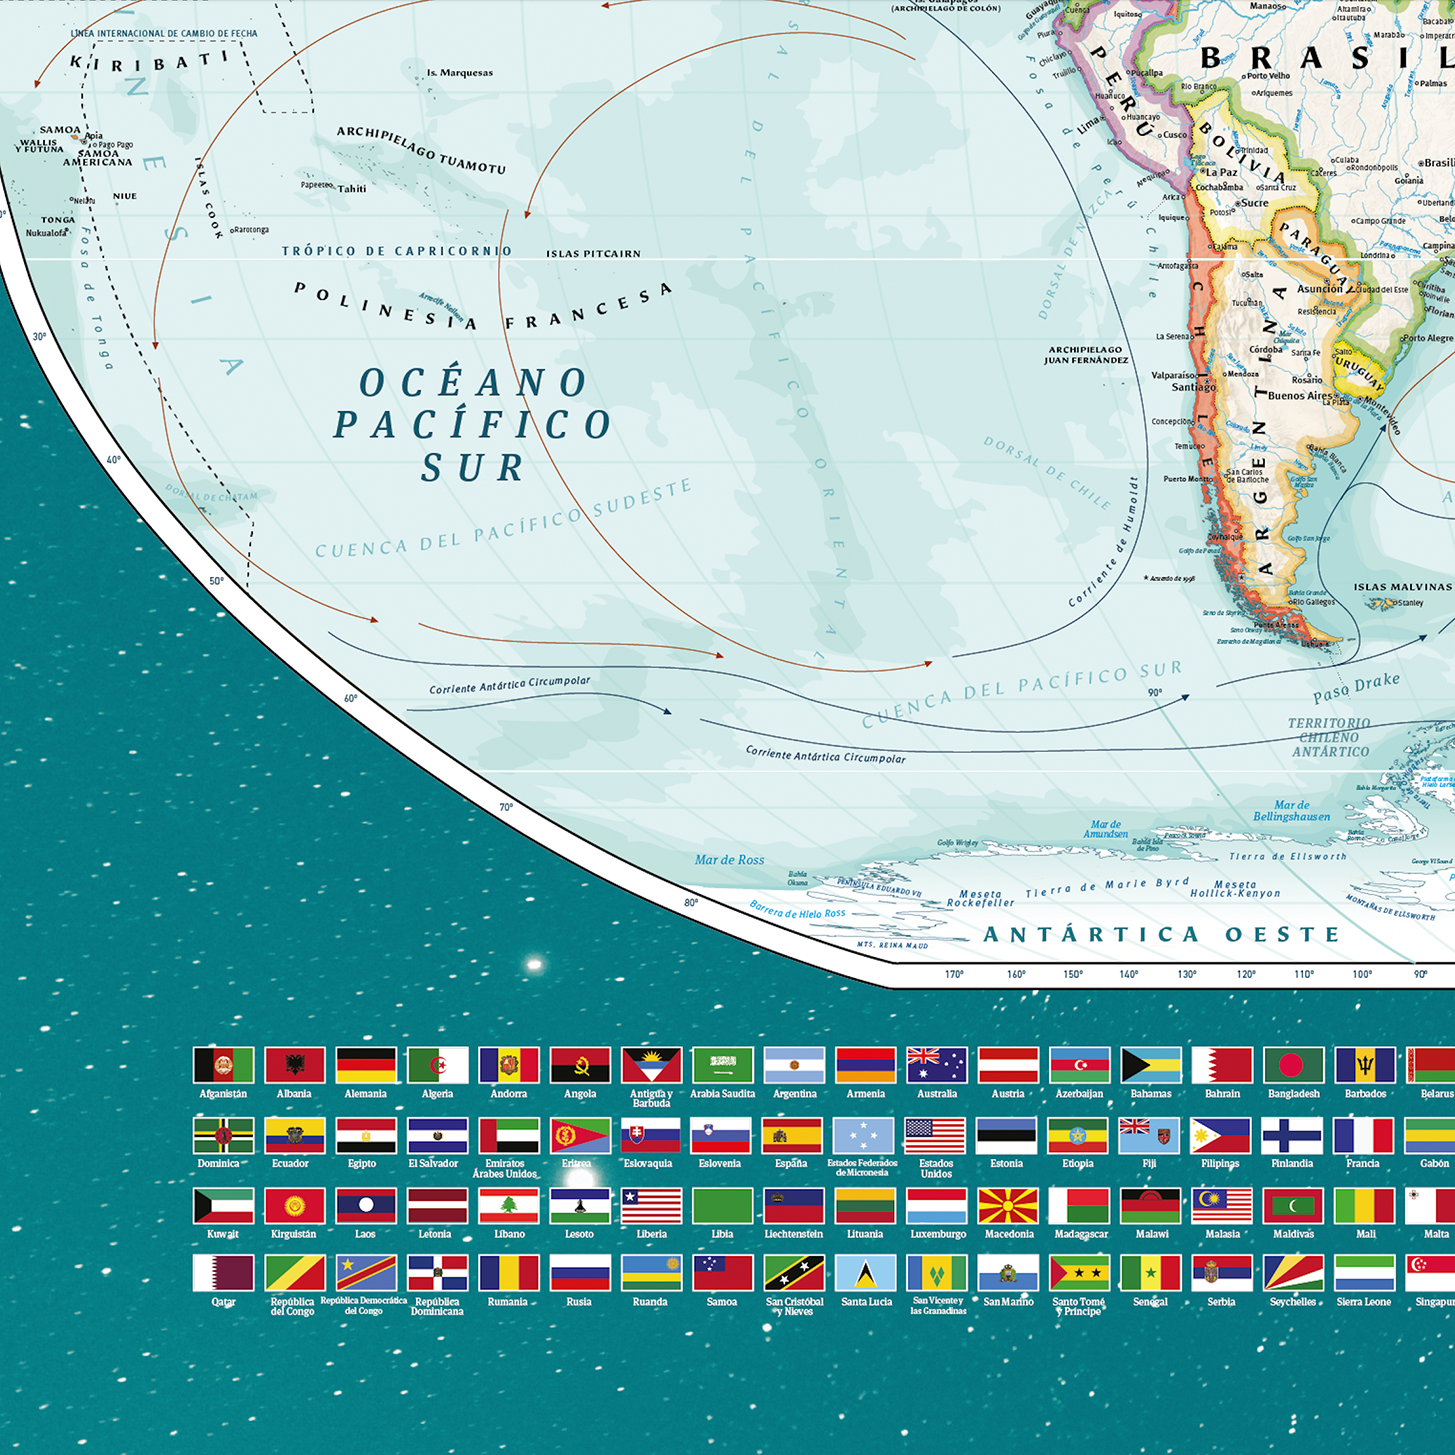 Mapa del Mundo político con banderas - Gran Formato